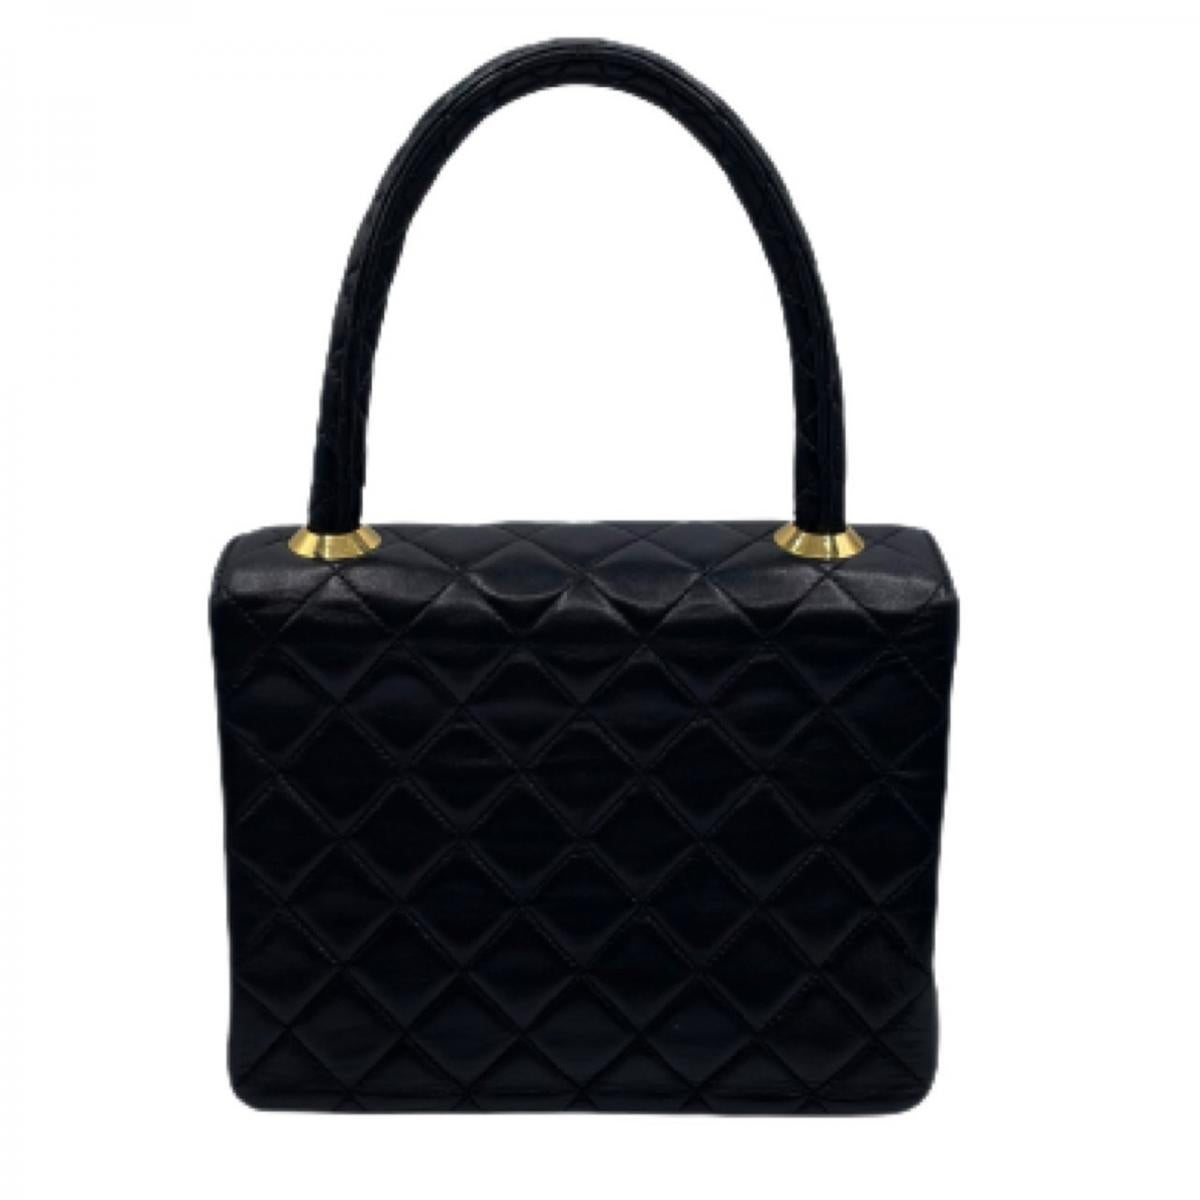 Leather Matelasse Handbag